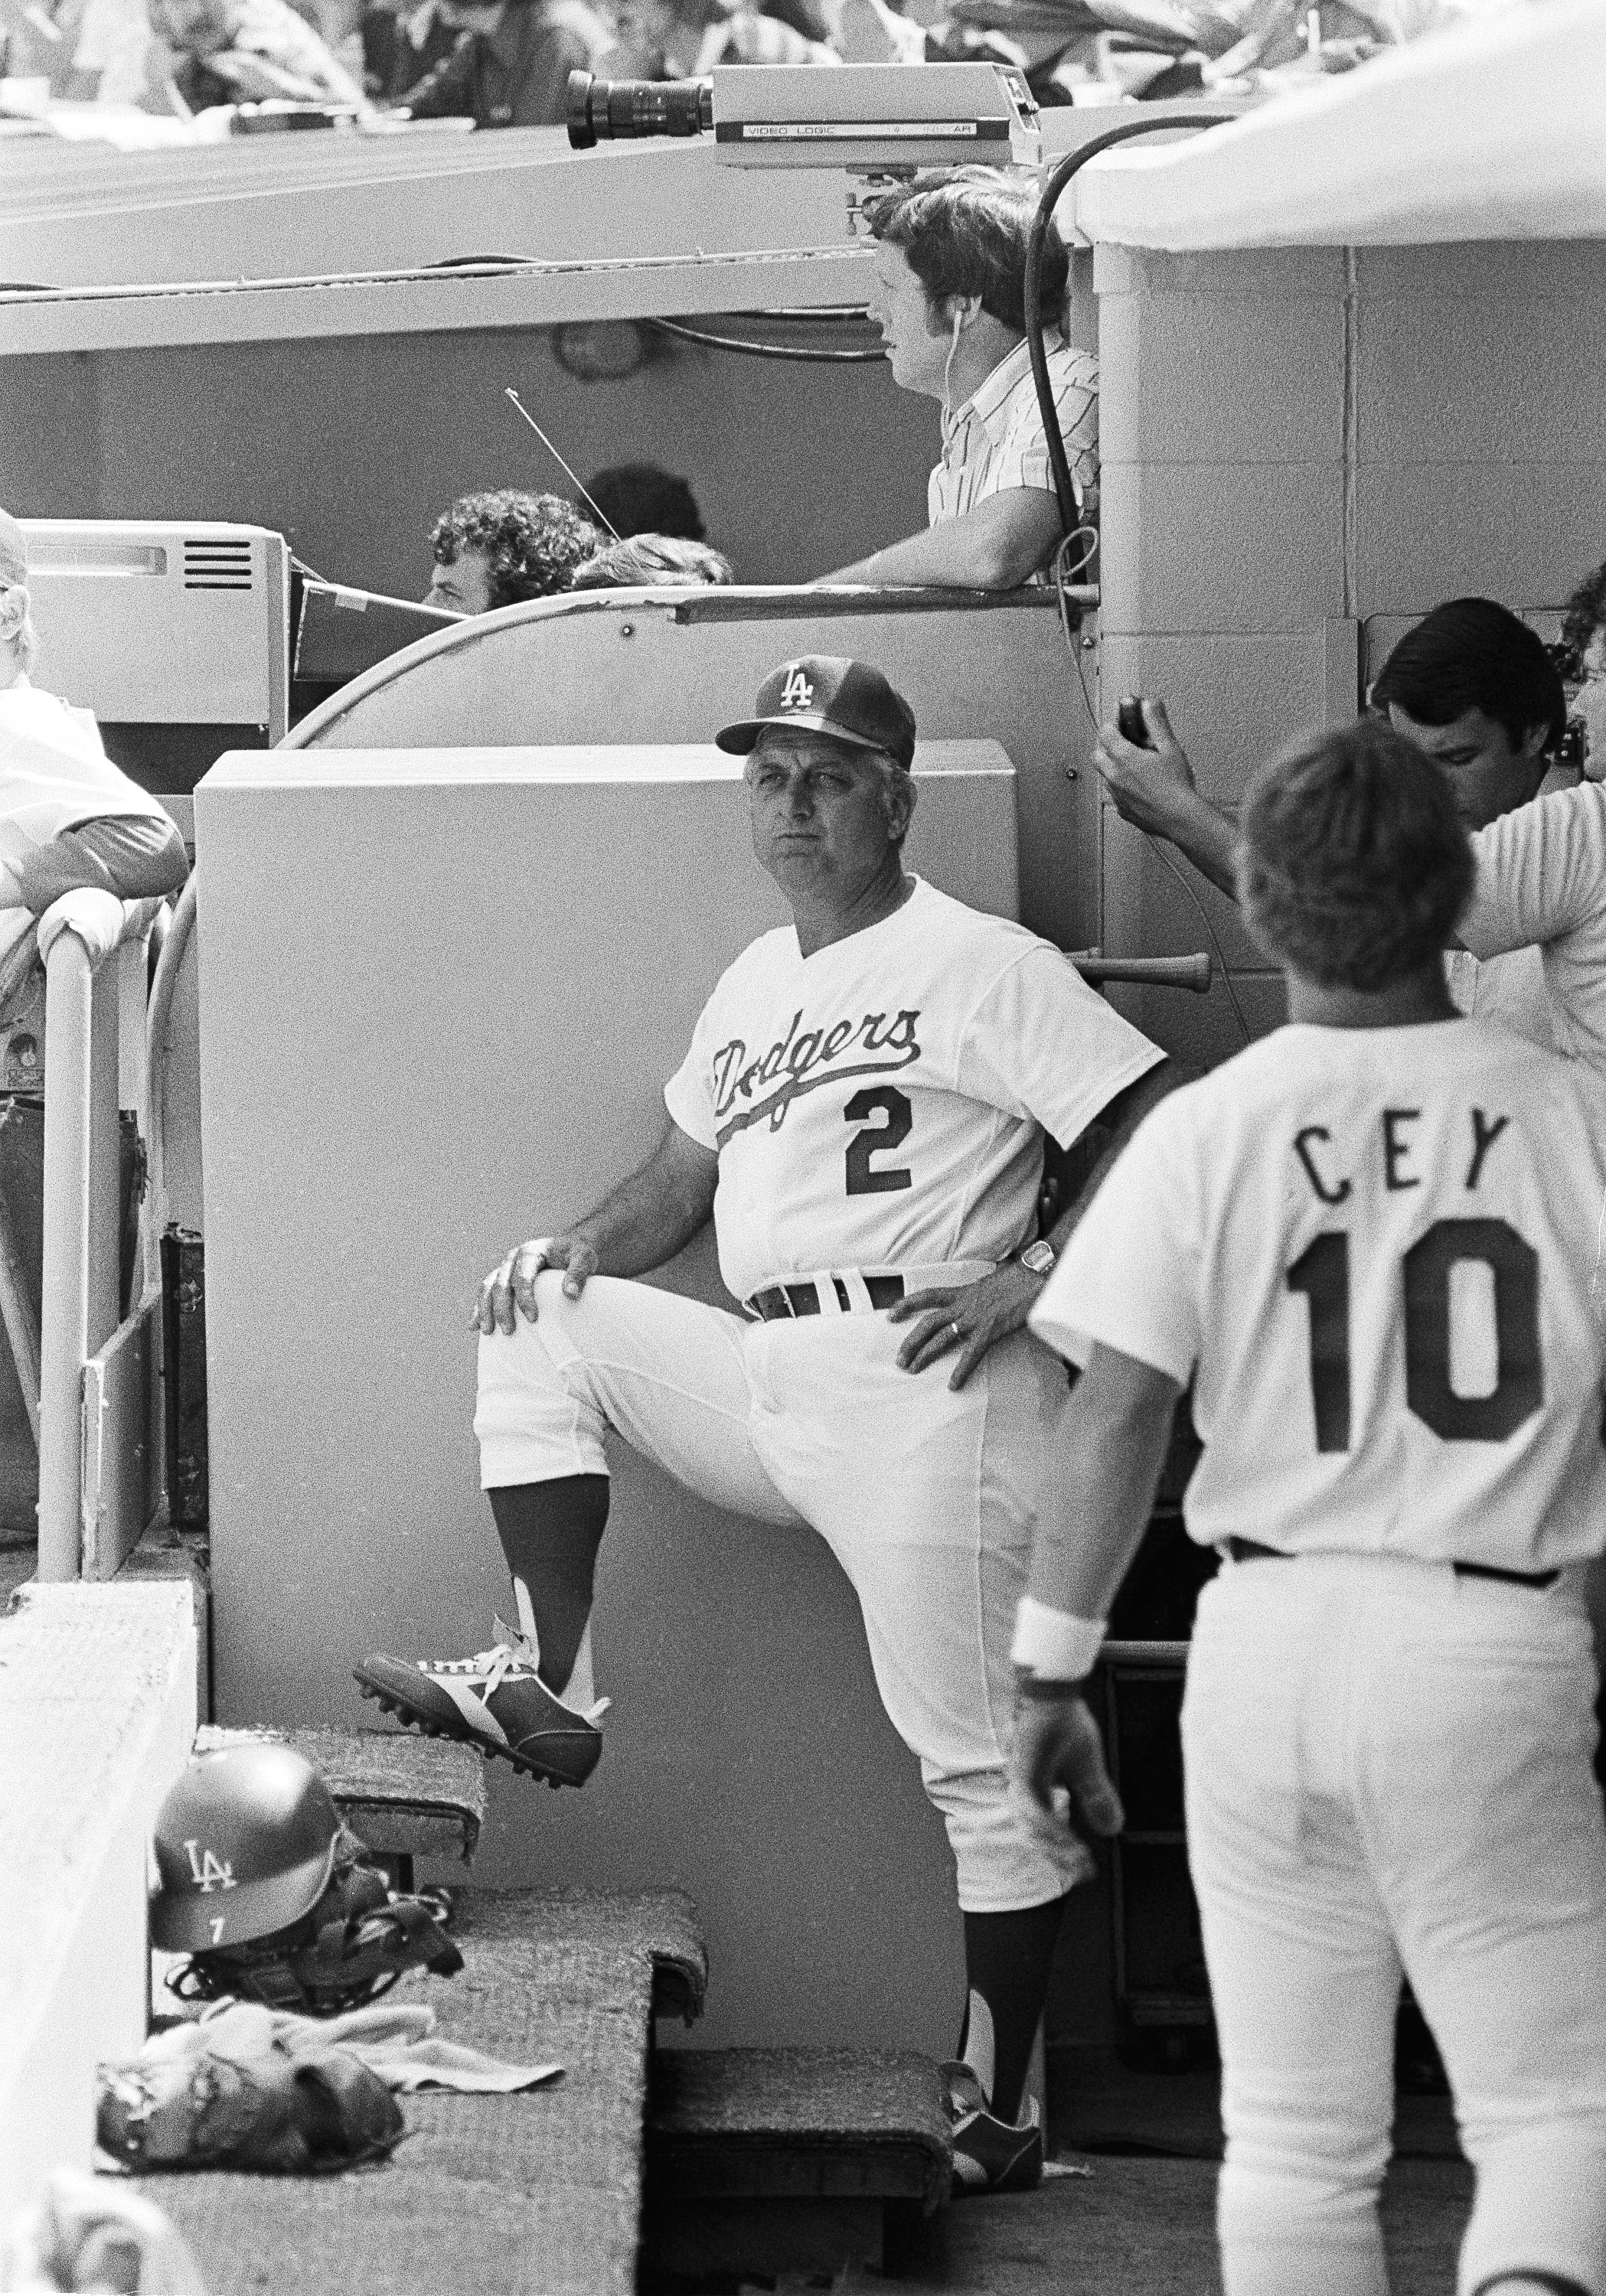 En memoria de Tommy Lasorda, leyenda de los Dodgers – New York